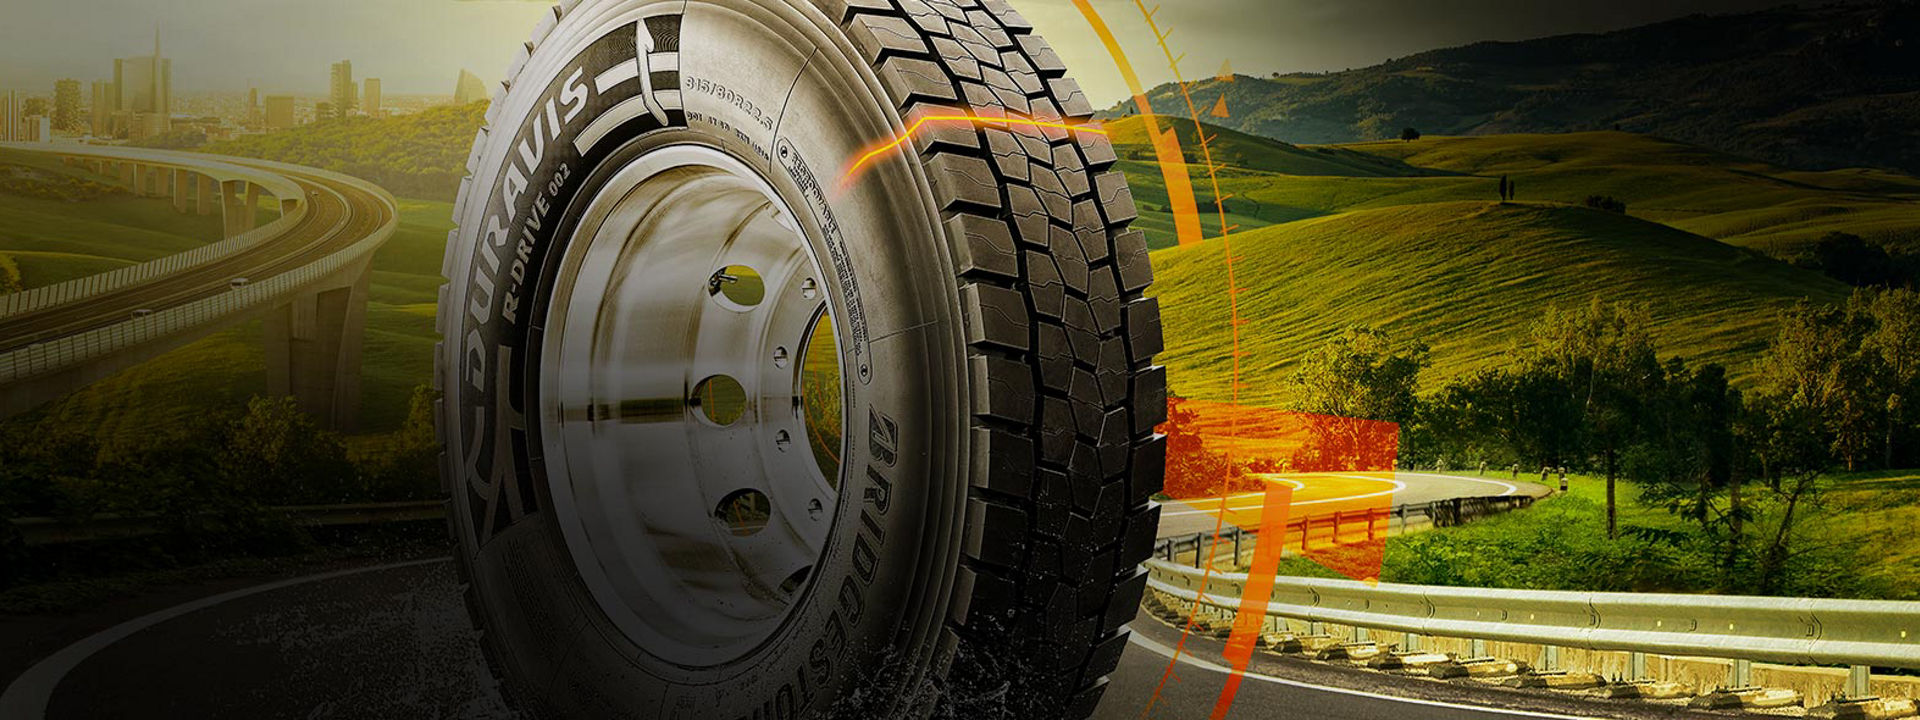 Esta imagem mostra o pneu Bridgestone Duravis R002 numa rodovia com gráficos que partilham as suas principais características exclusivas.